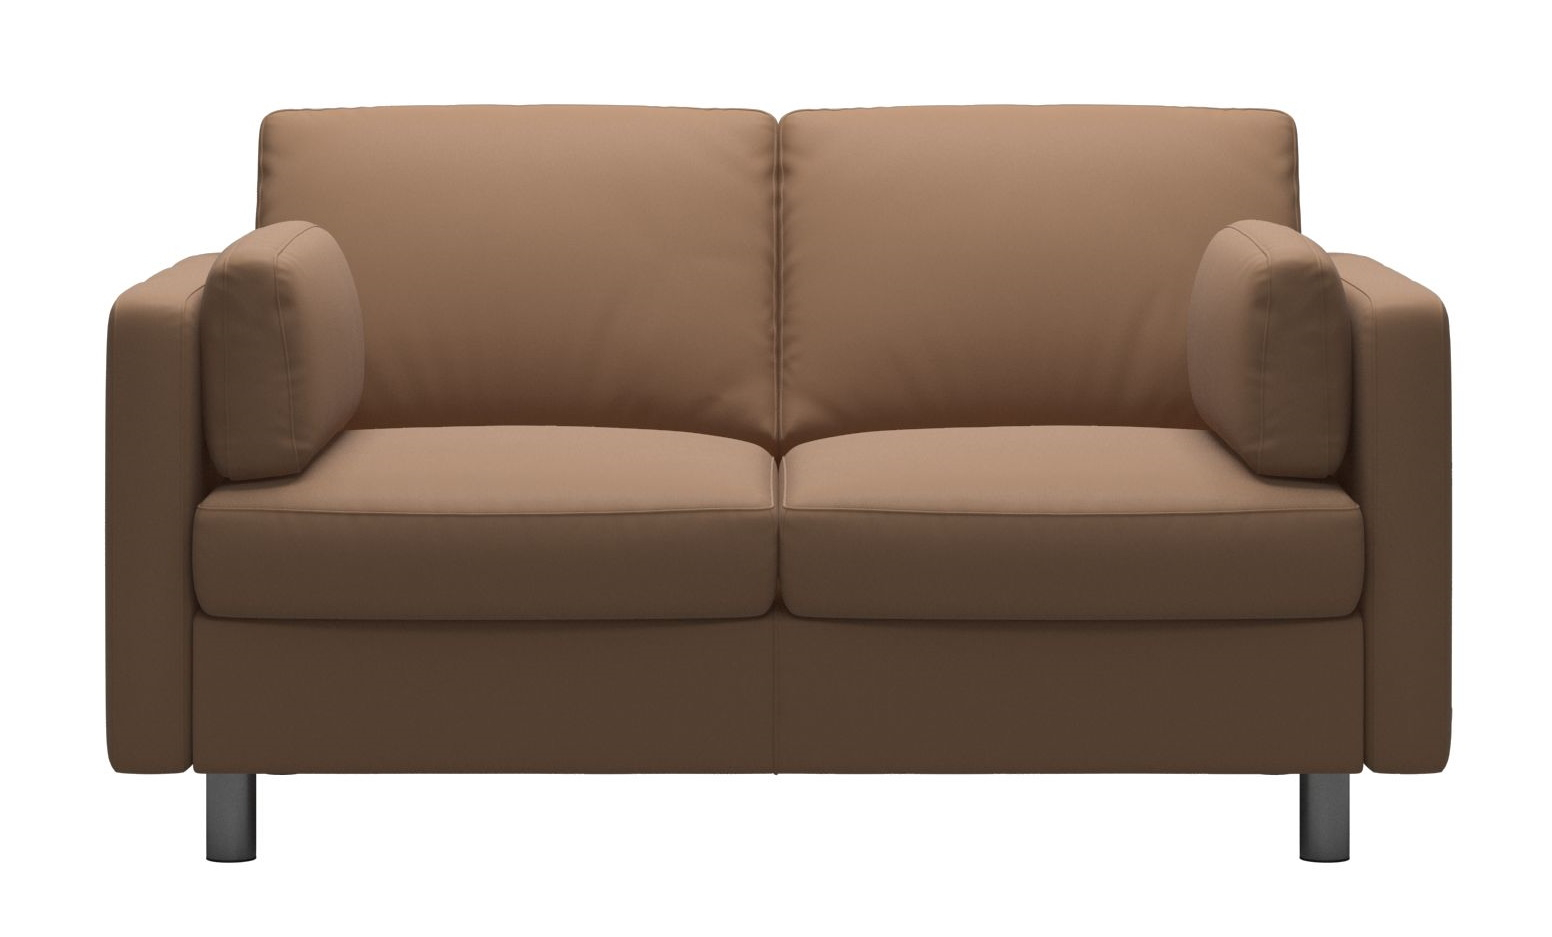 Canapea cu 2 locuri Stressless Emma E600 Classic picioare metalice 11cm piele Batik Latte Canapele